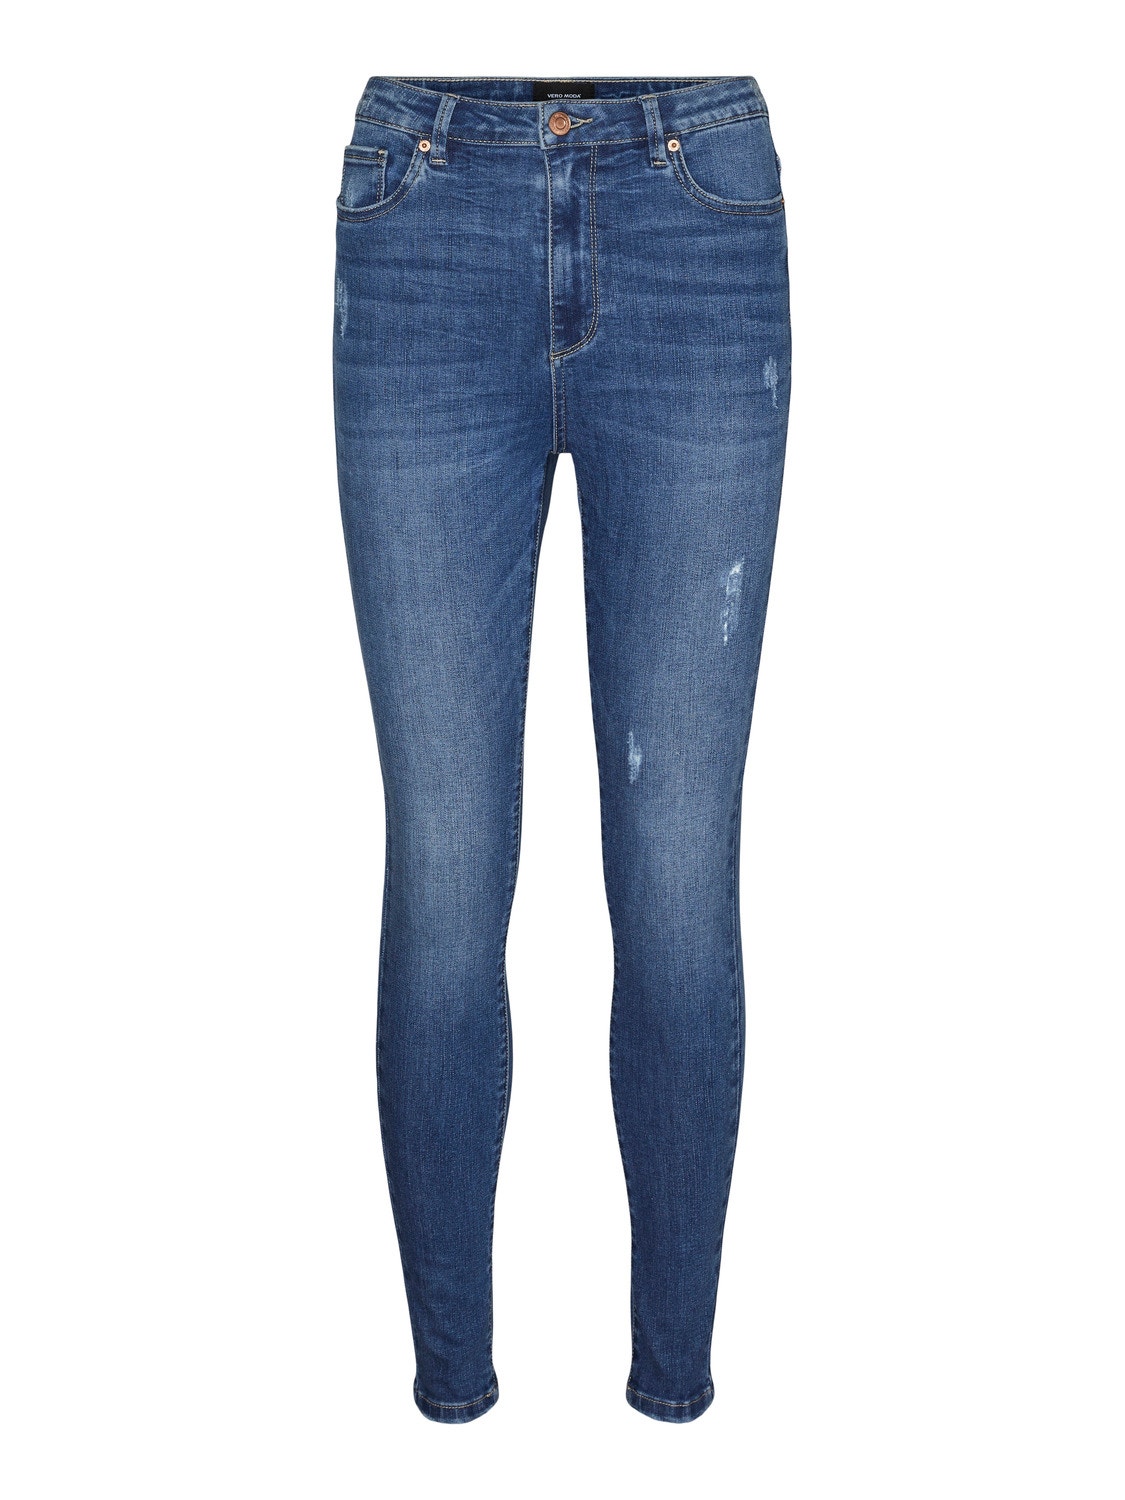 Vero Moda VMSOPHIA Skinny Fit Jeans -Medium Blue Denim - 10305050